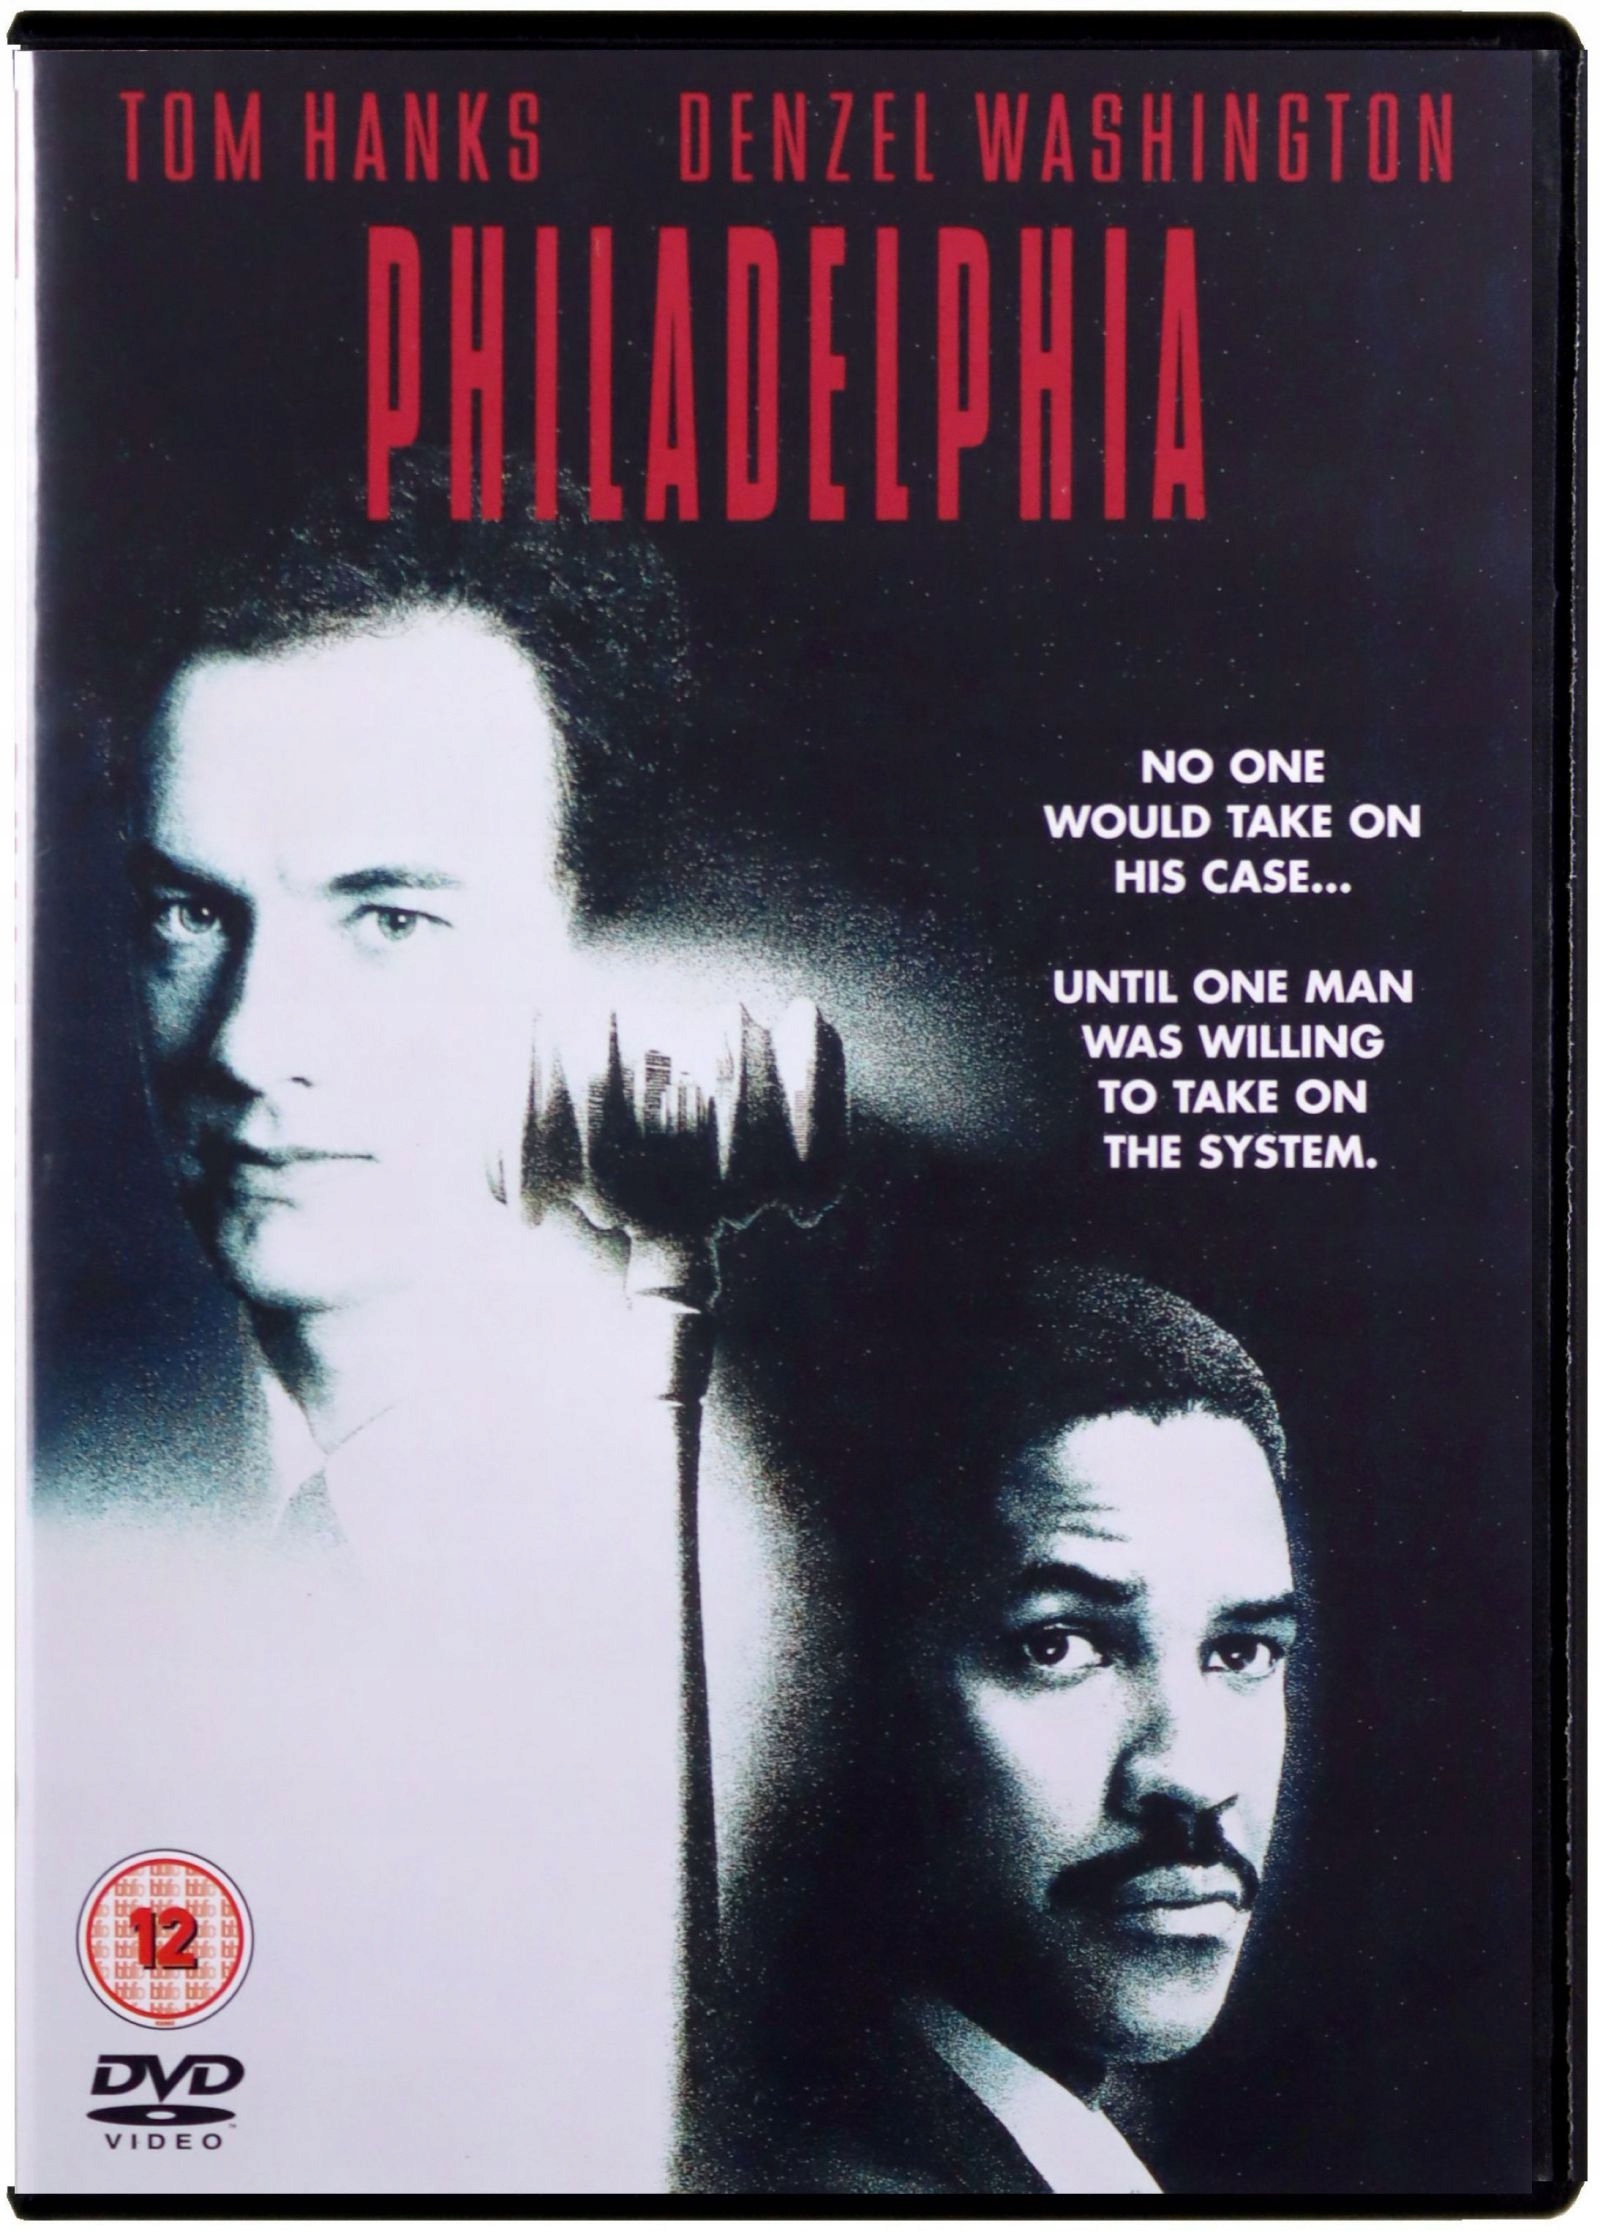 

Filadelfia [DVD]